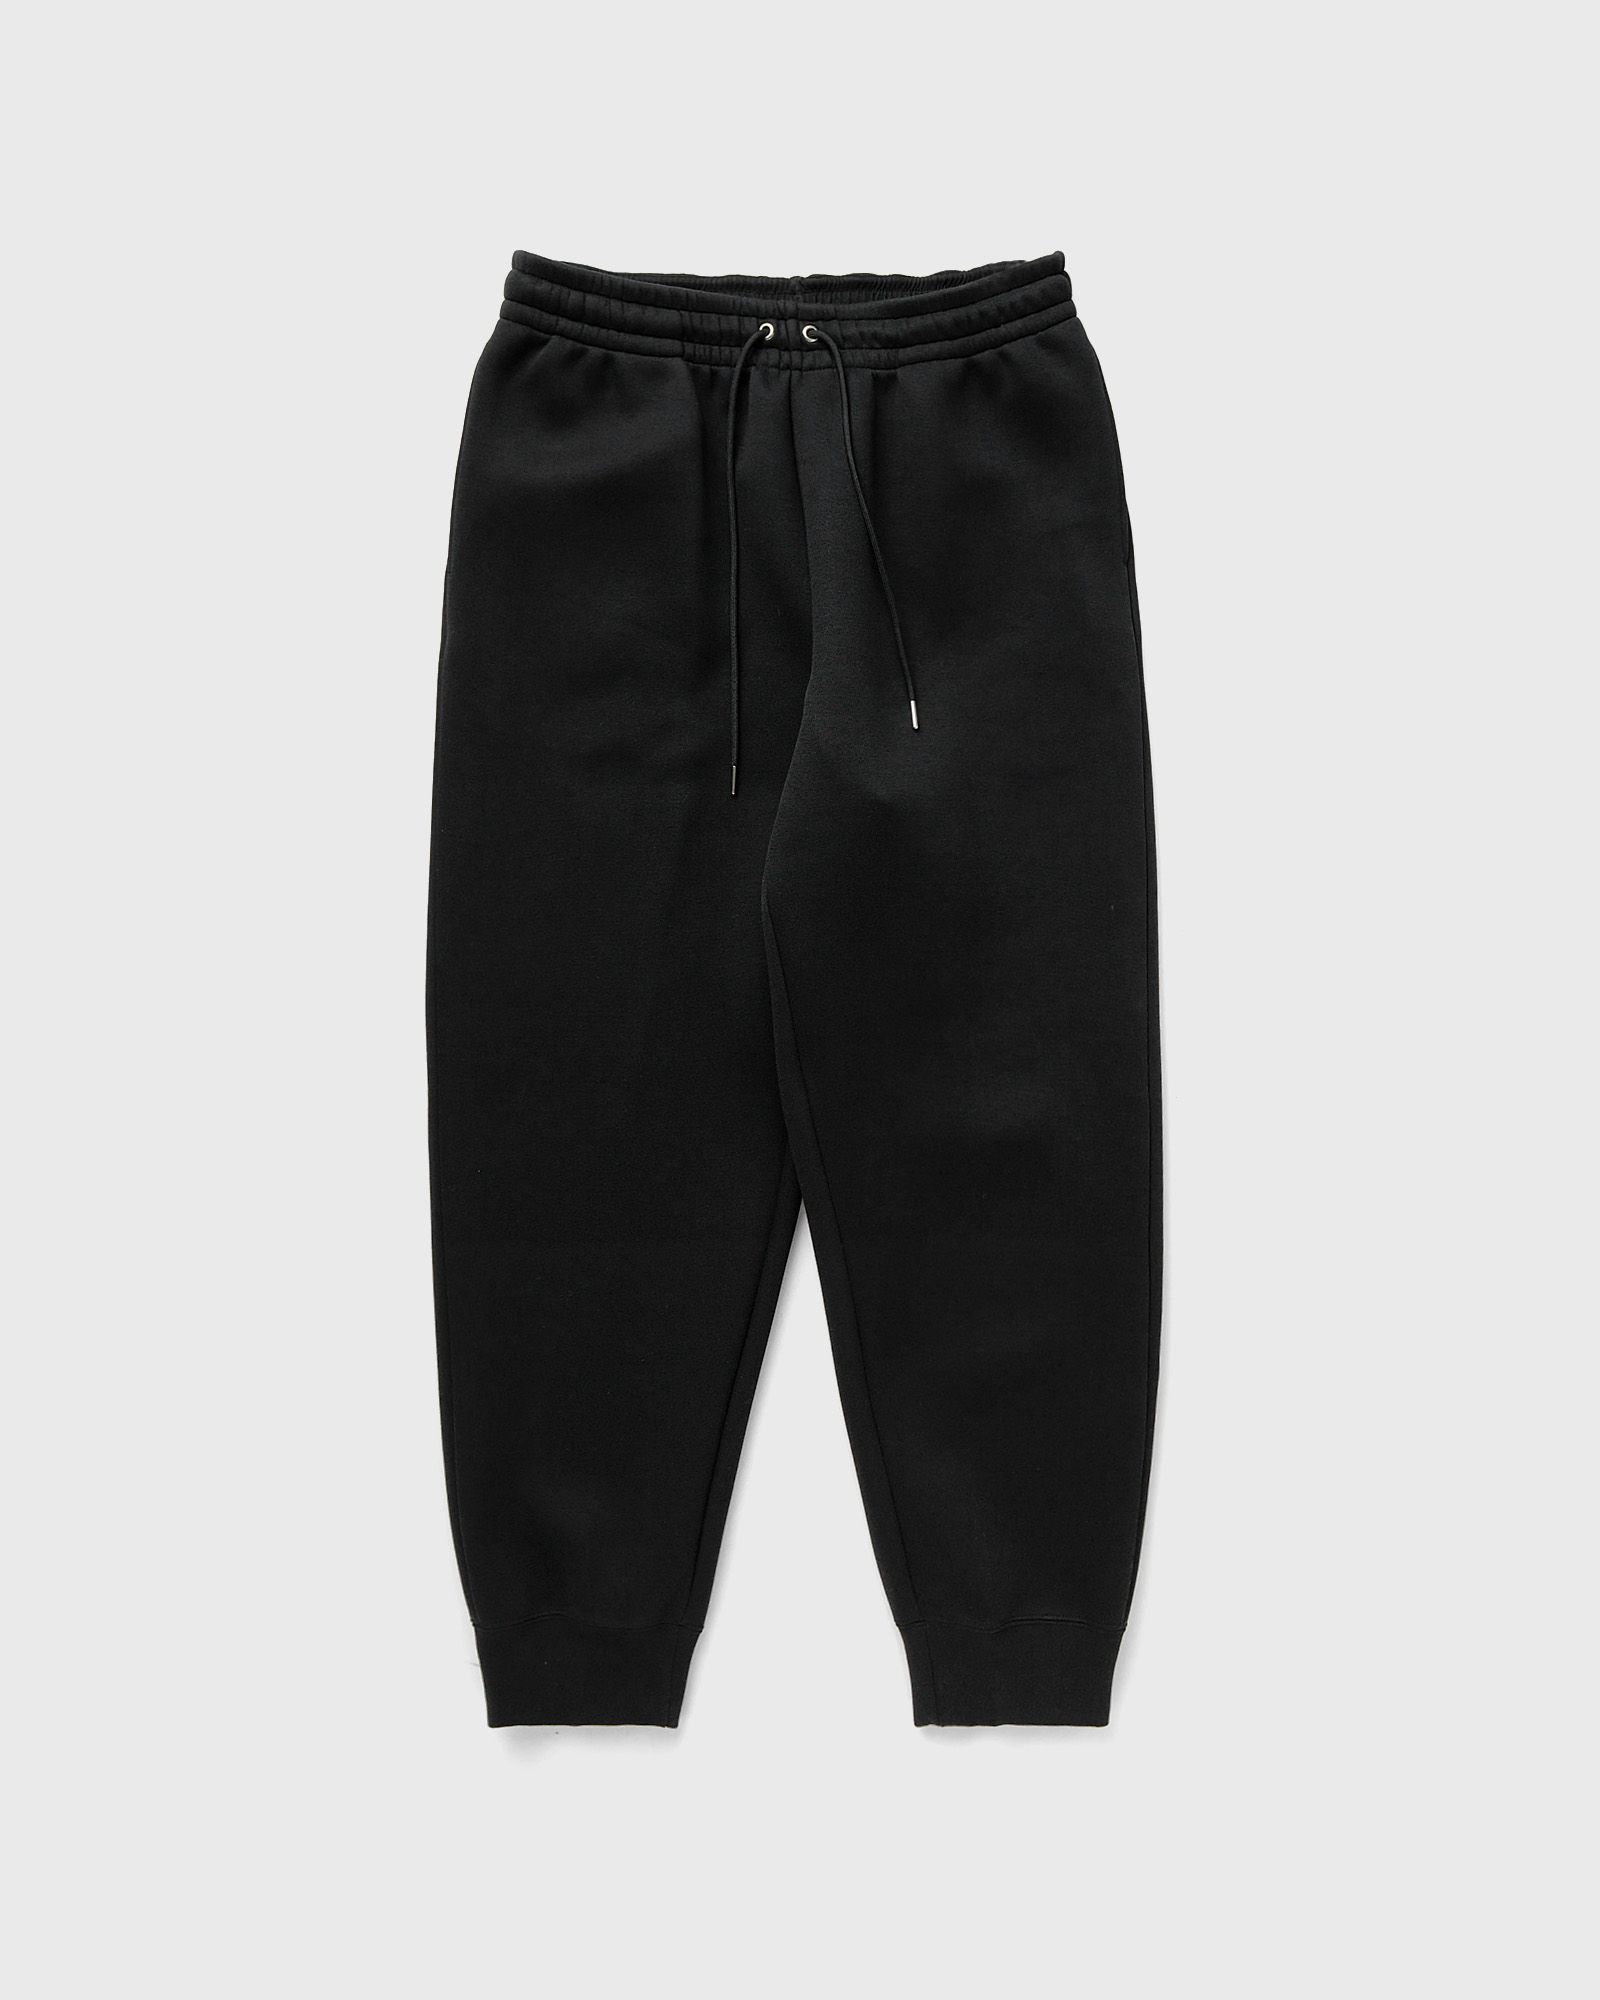 Nike - tech fleece reimagined fleece pants men sweatpants black in größe:xl